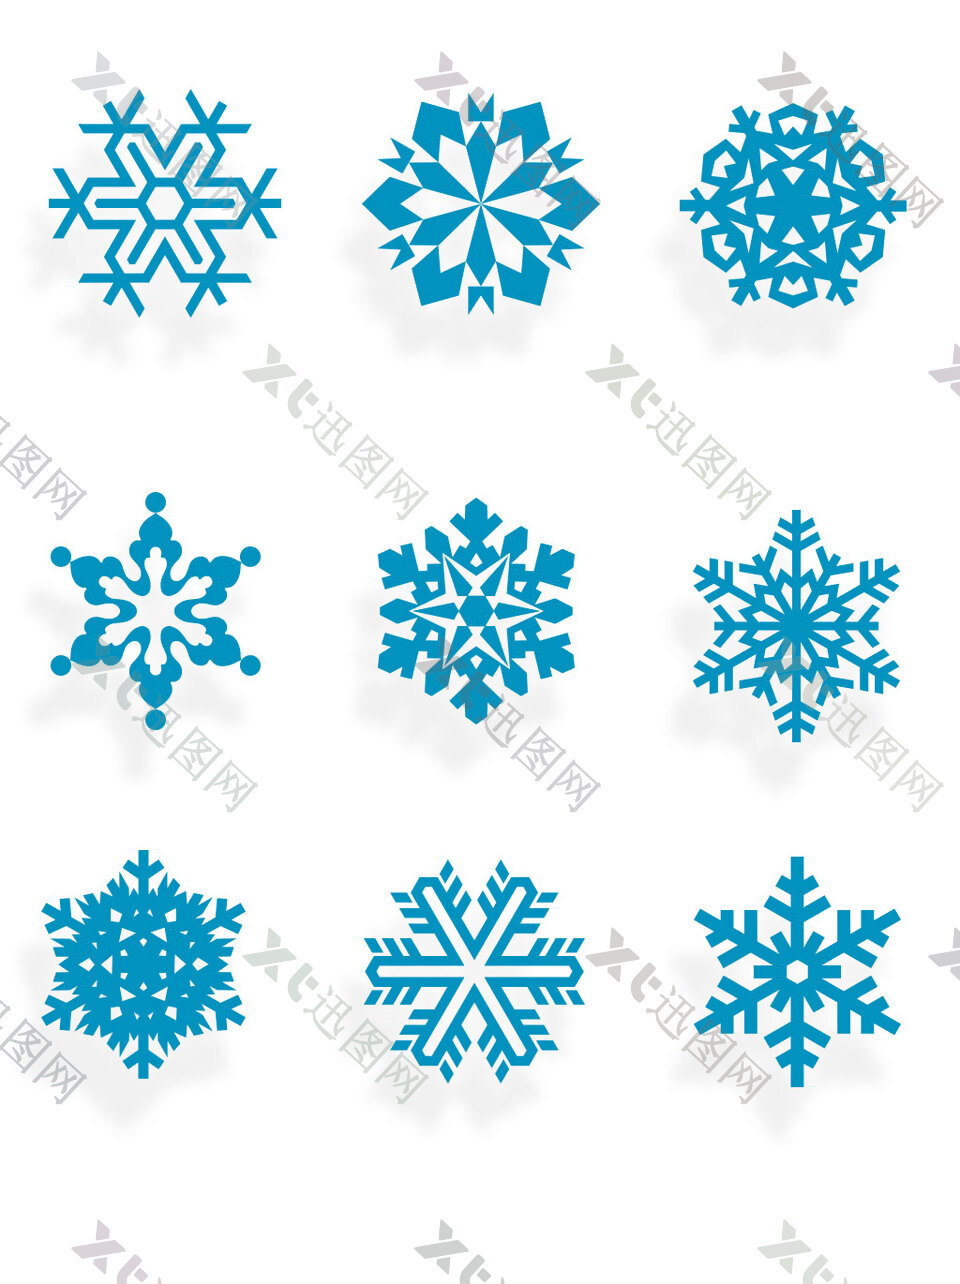 蓝色雪花矢量元素冬天装饰素材图案集合